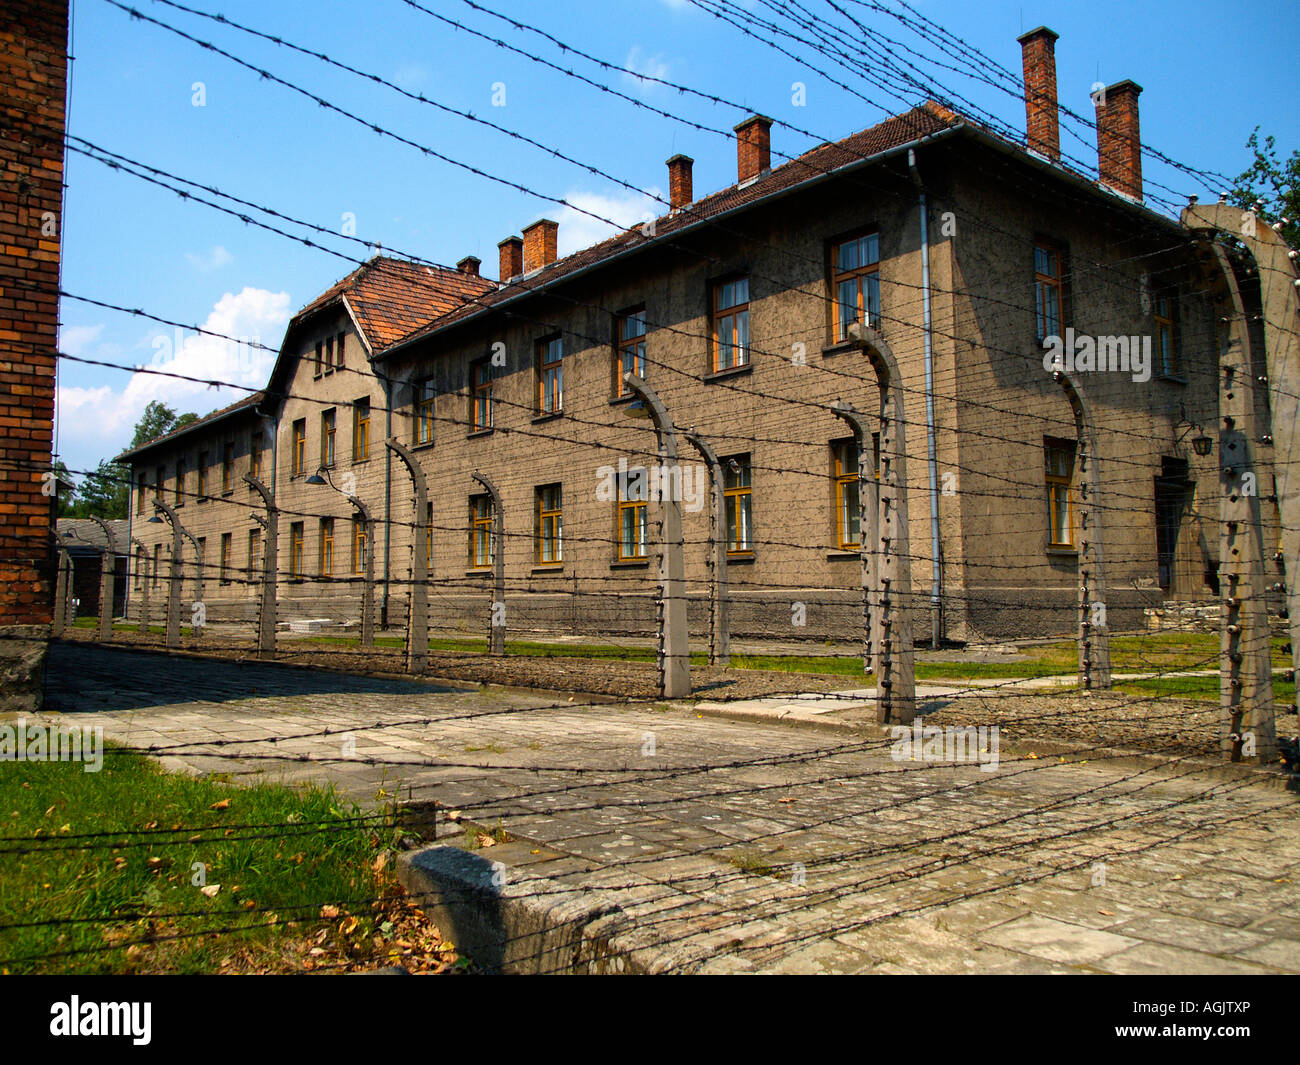 Les fils barbelés, casernes, et des bâtiments administratifs et de ruines à l'extérieur du camp de concentration d'Auschwitz Cracovie, Pologne. Banque D'Images